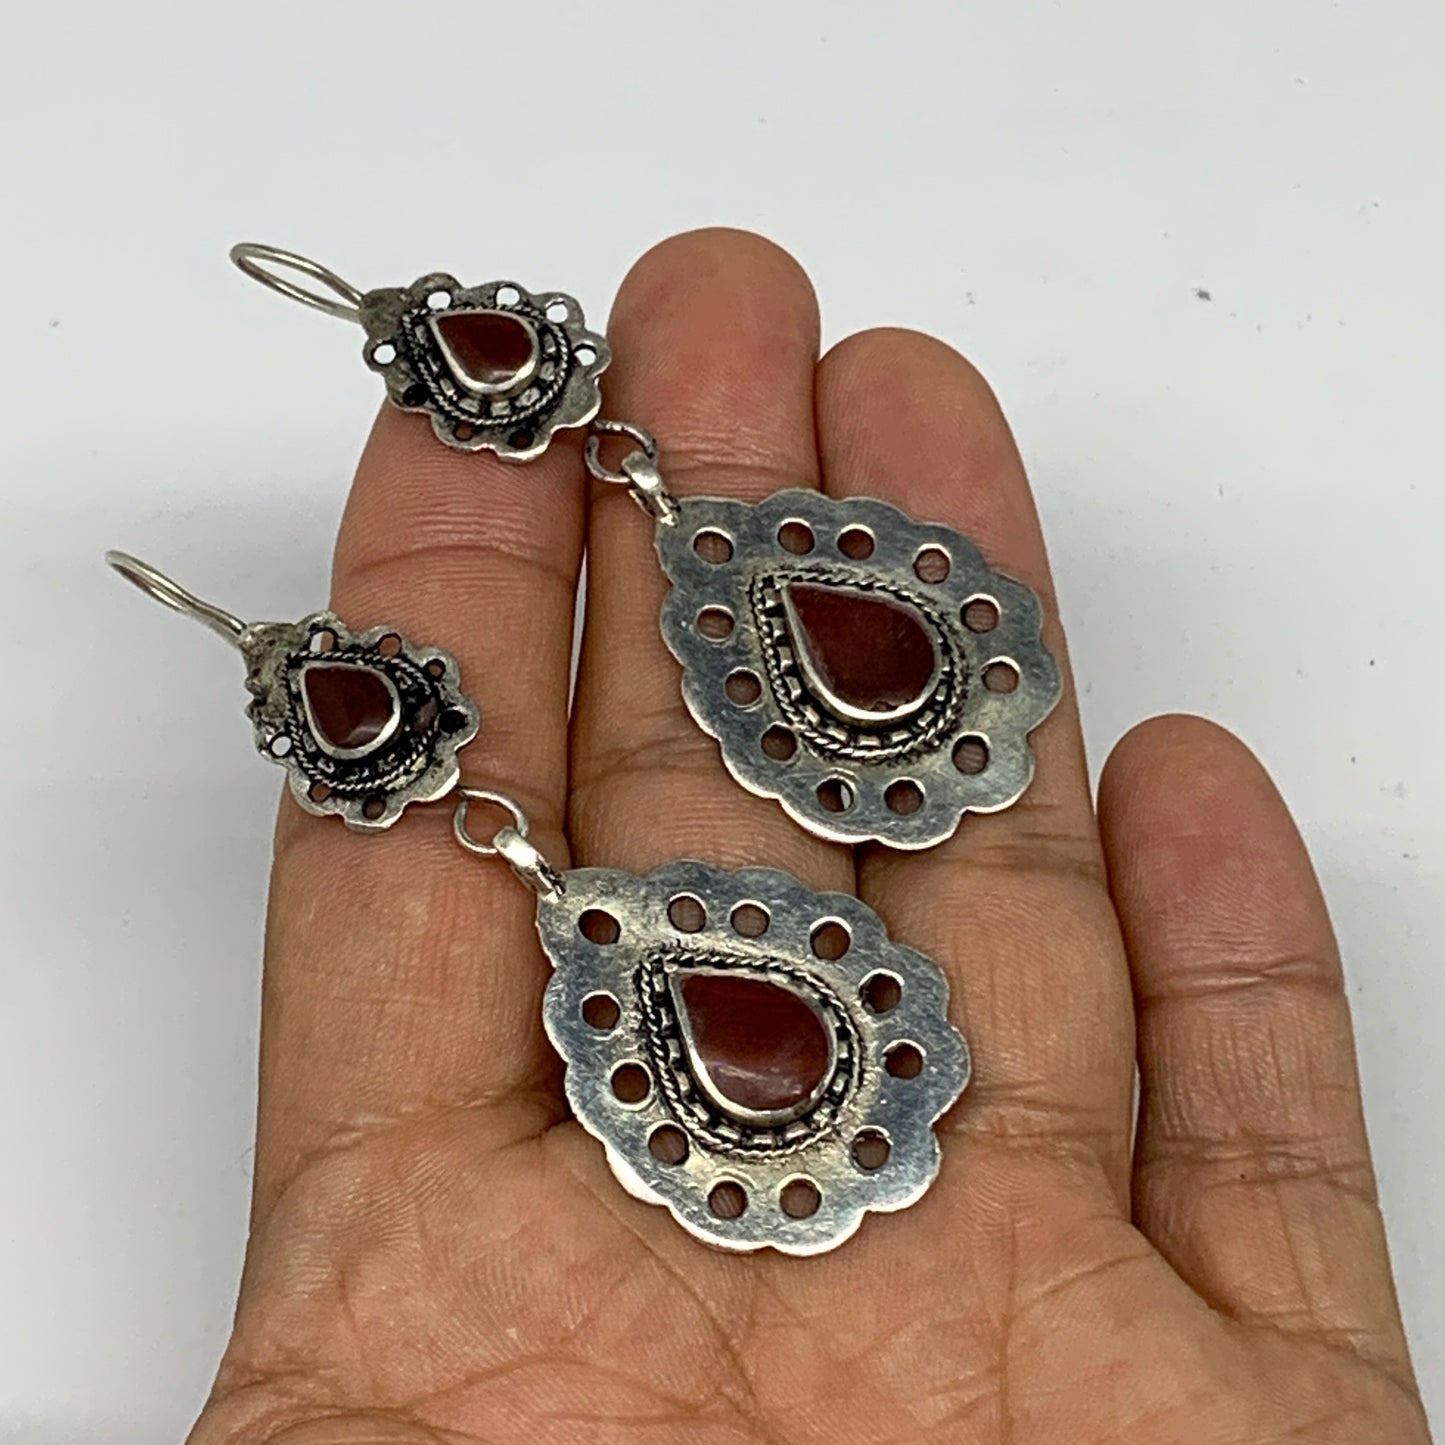 1pc, Handmade Turkmen Earring Tribal Jewelry Red Carnelian Teardrop Boho, B14186